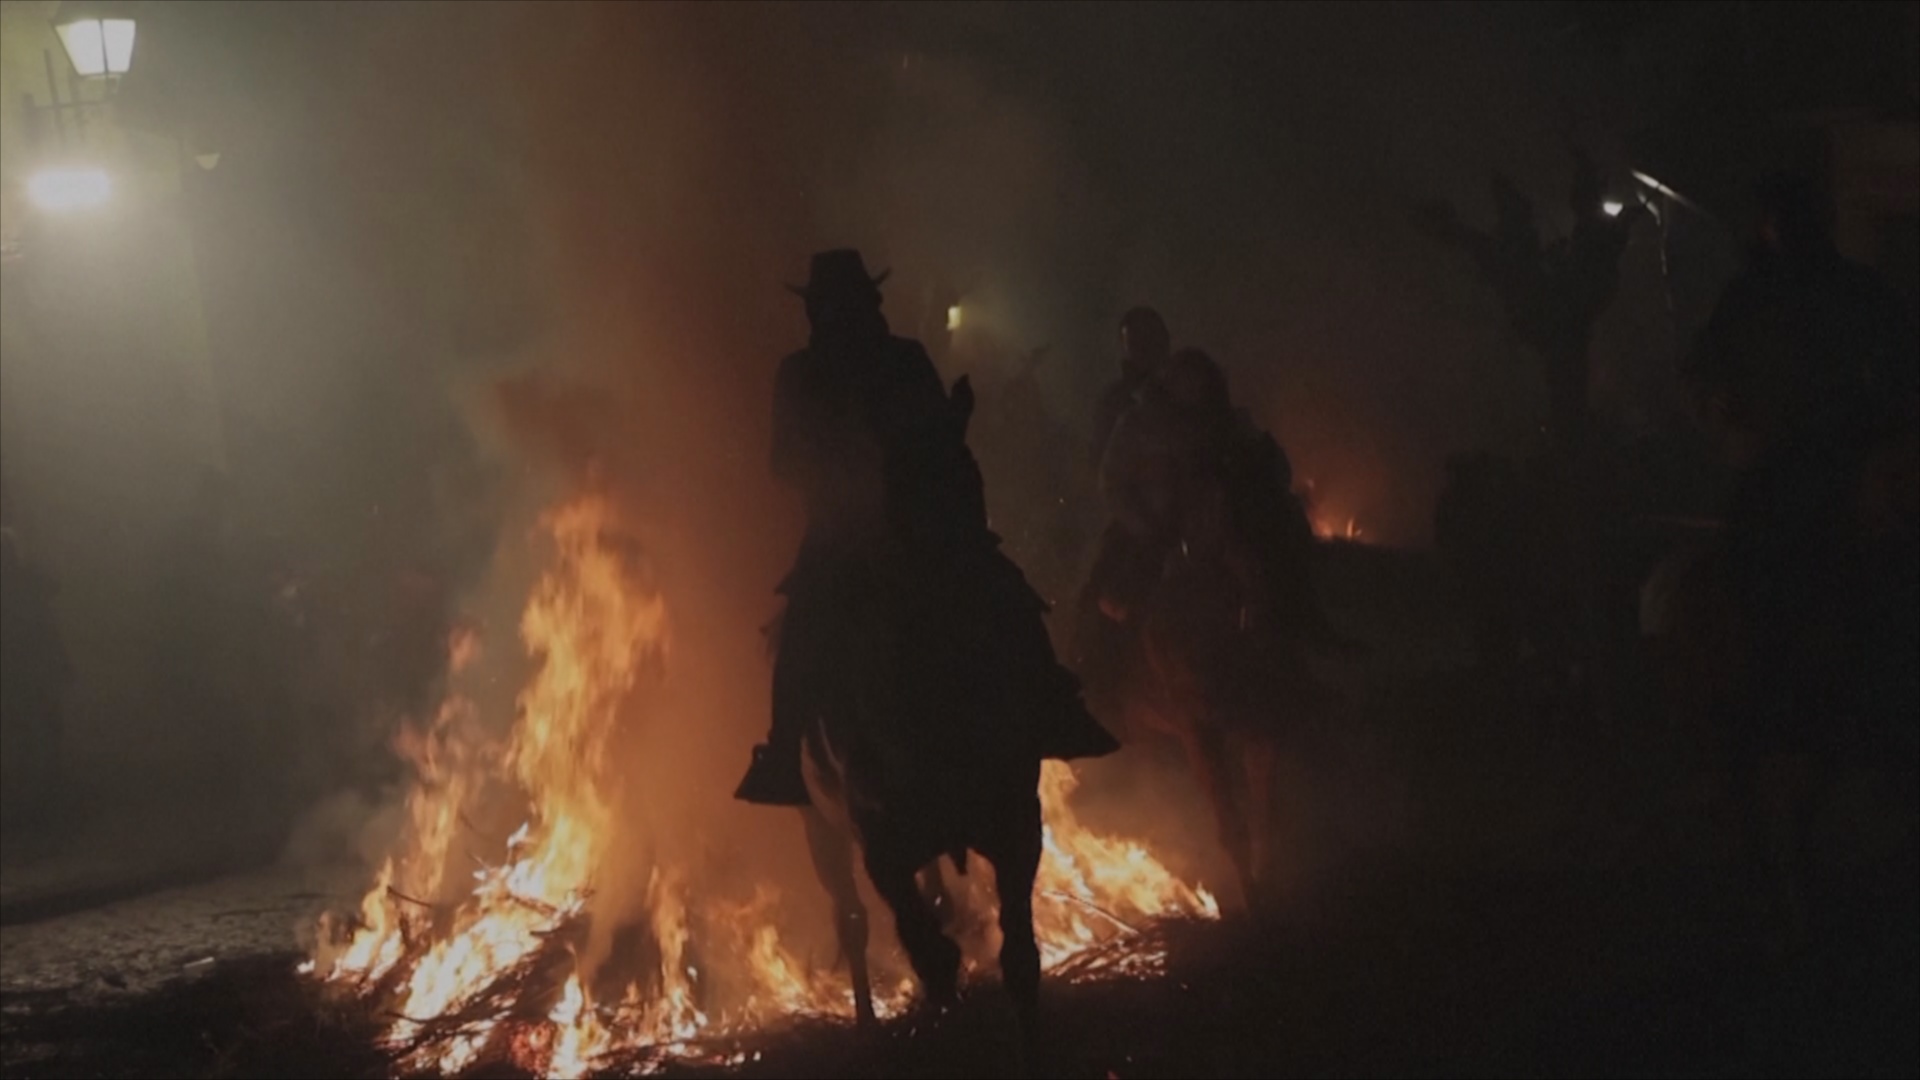 Дым и огонь: 100 лошадей прошли через обряд очищения в Испании